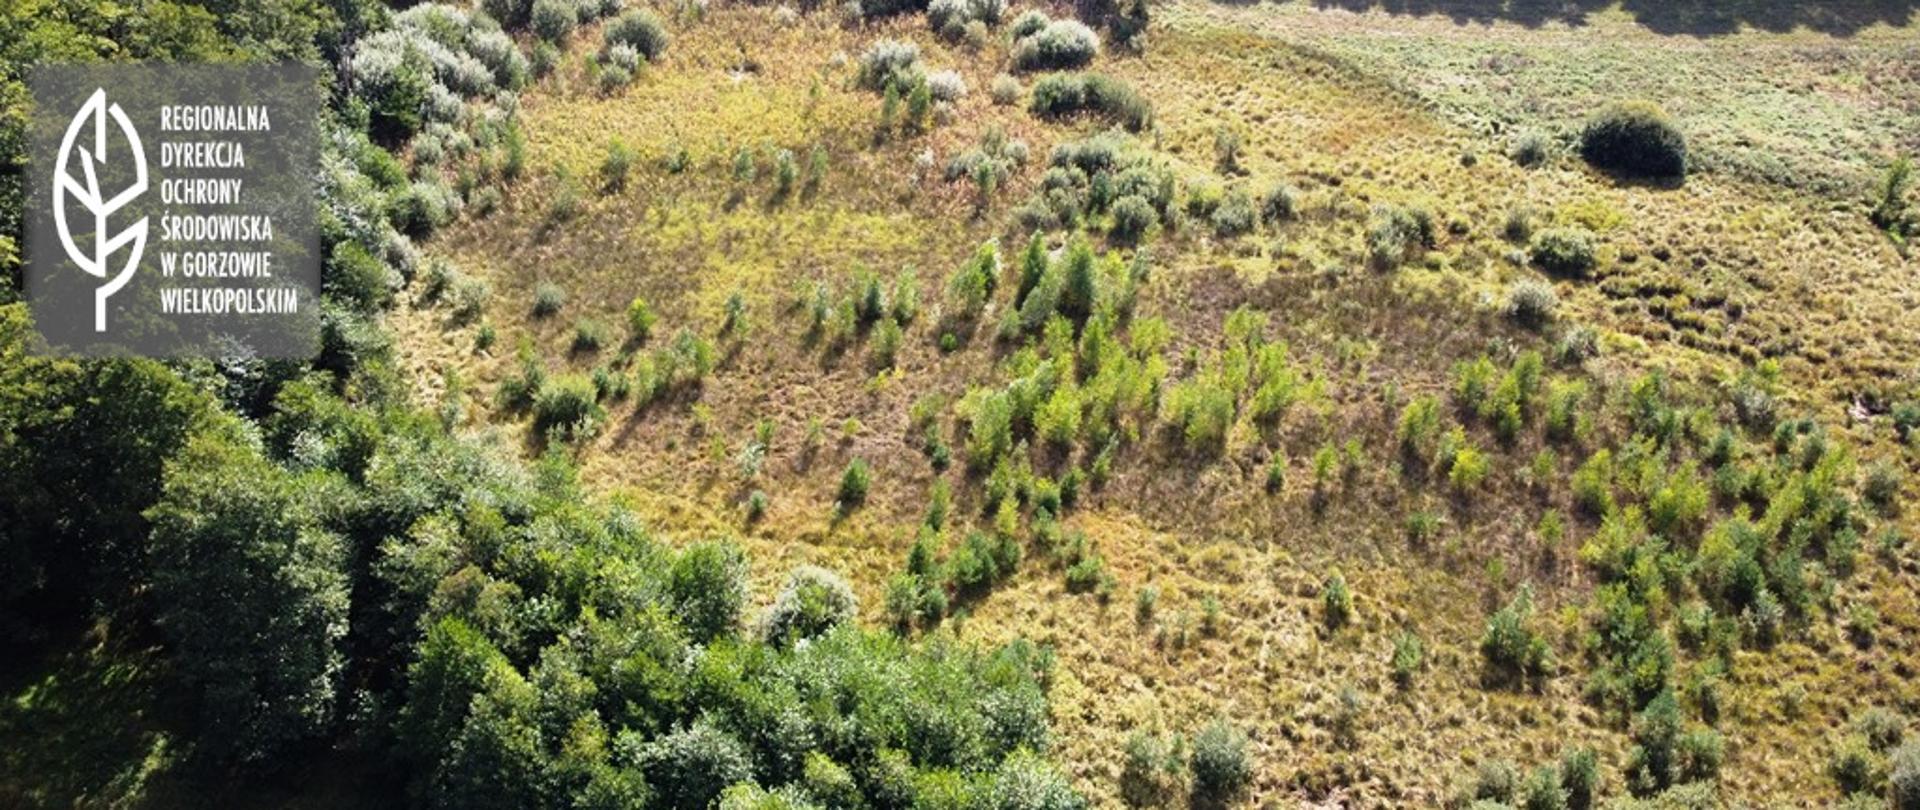 Zdjęcie z lotu ptaka przedstawiające śródleśną polanę, porośniętą pojedynczymi drzewami.